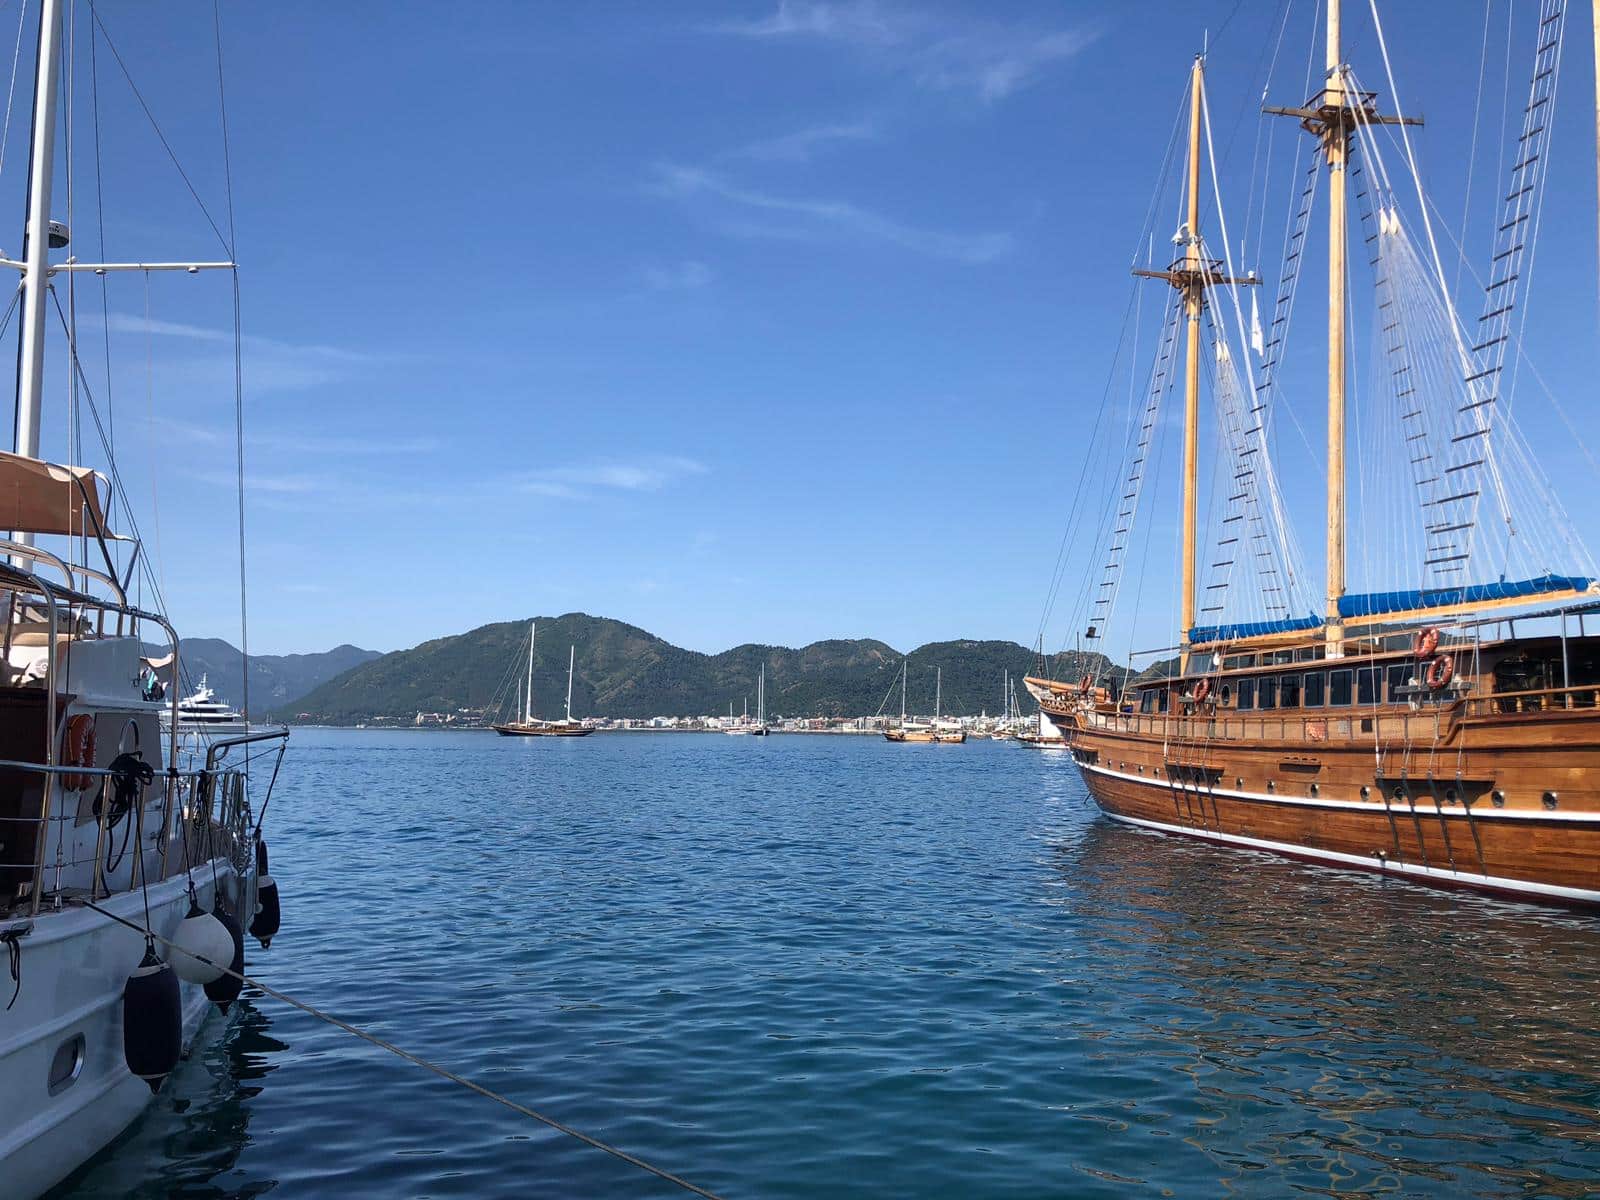 Encuentre un barco de alquiler en el sur de Turquía